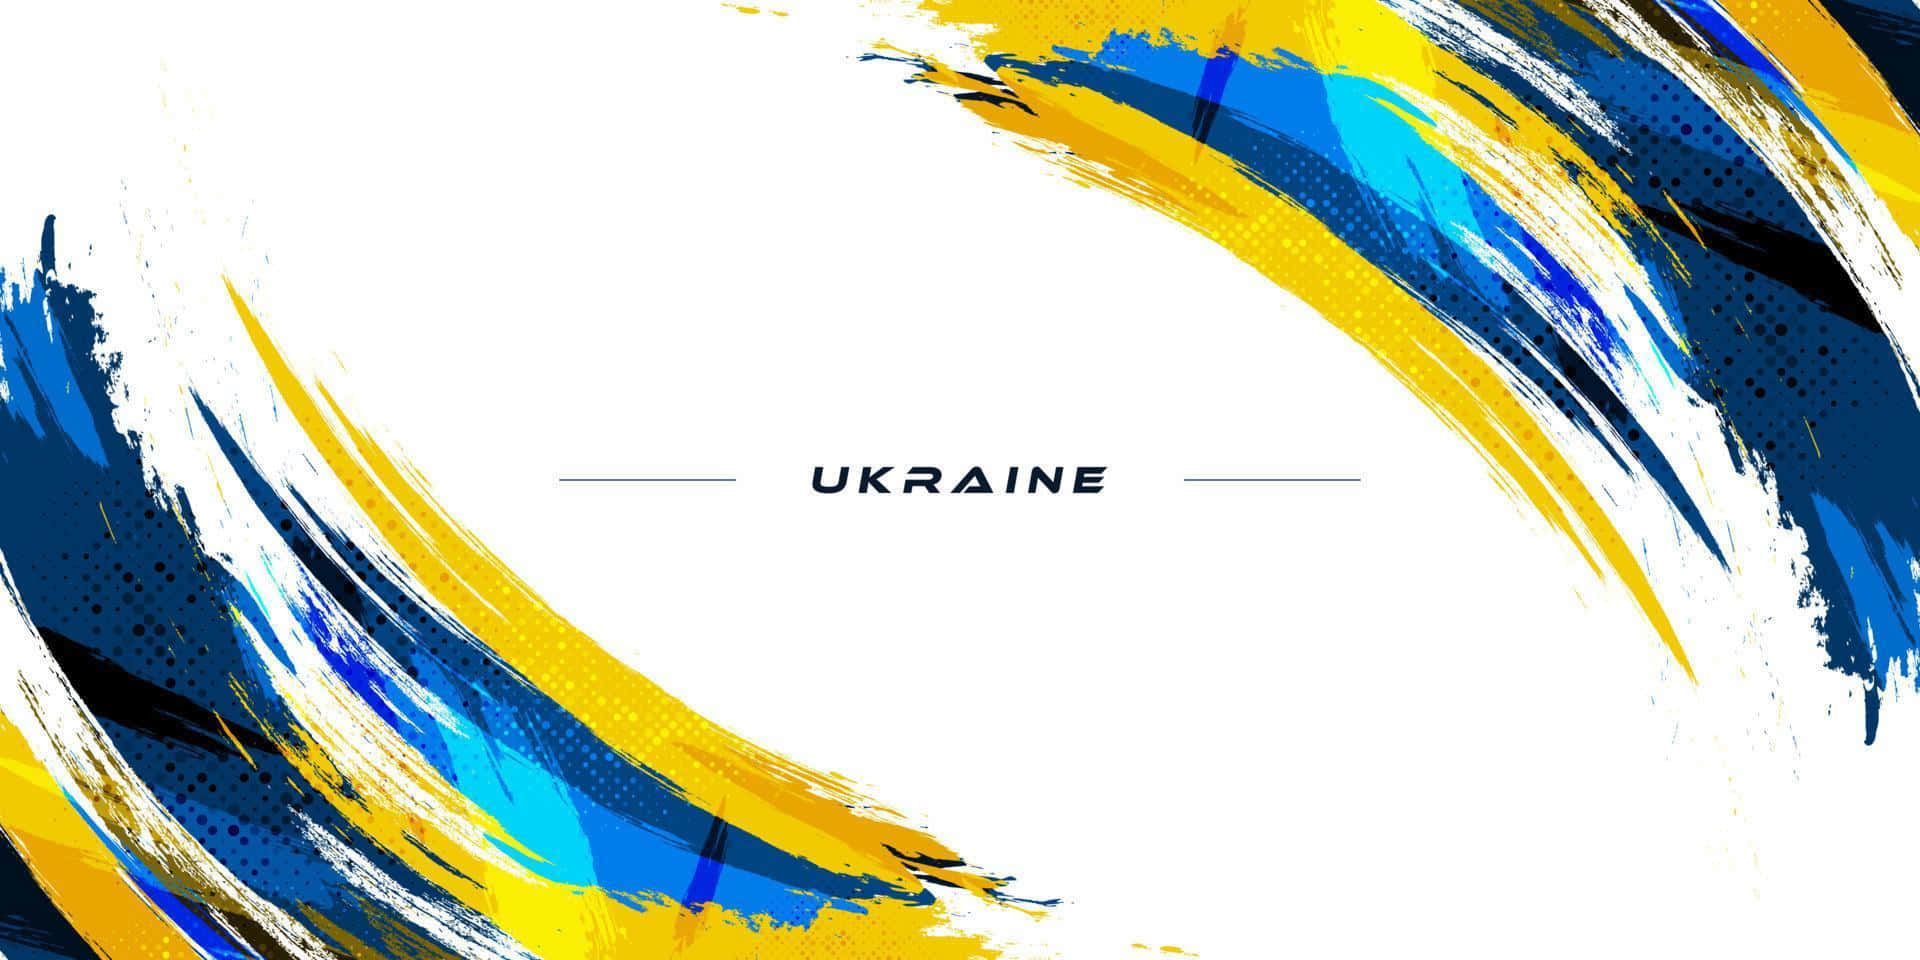 Paesaggiotranquillo Della Campagna Ucraina.